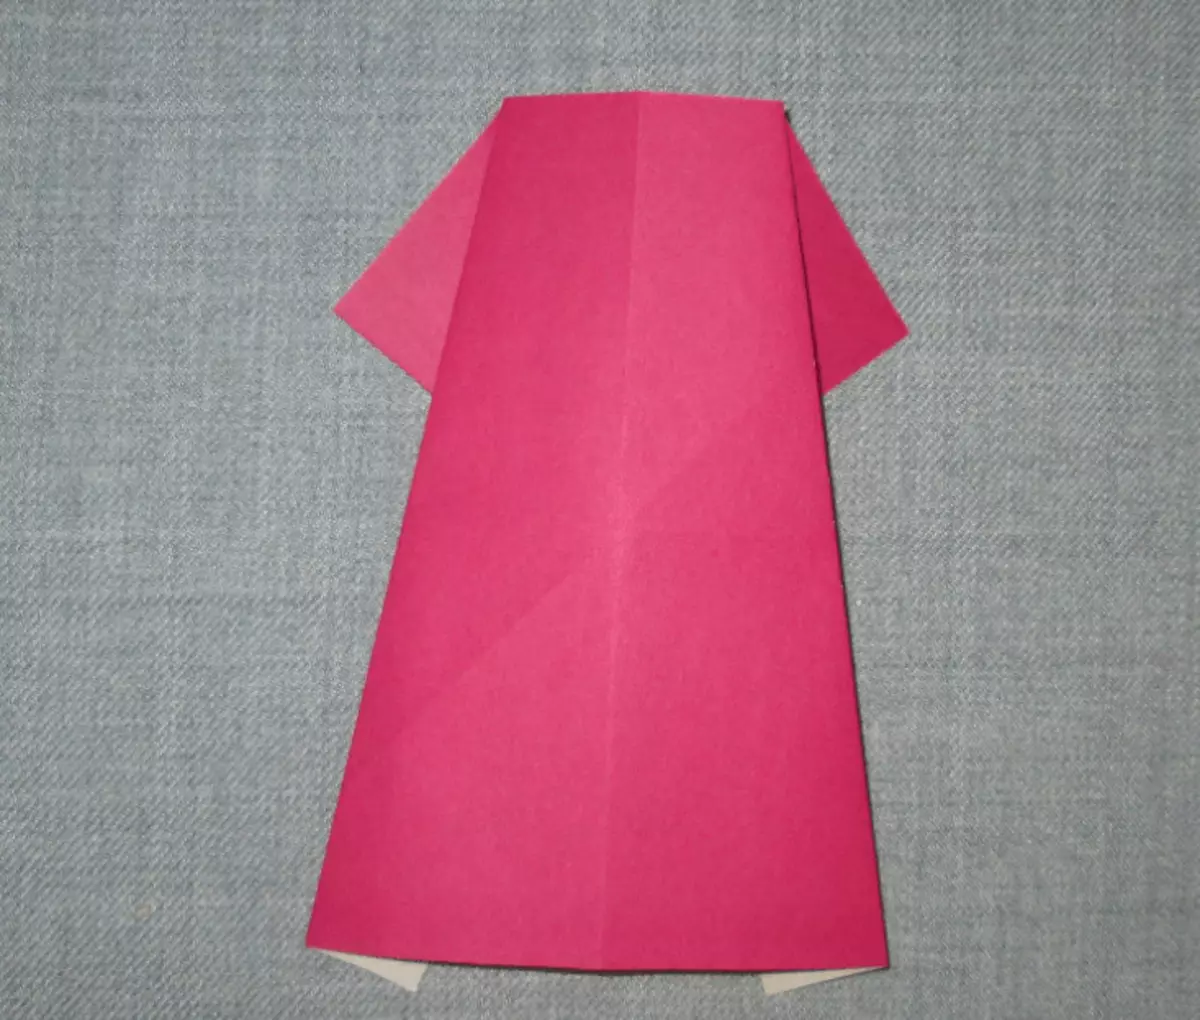 पेपर ऑफ ओरिगामी: मुलांसाठी एक योजना. 8 मार्च रोजी आई स्टेप बायपाससाठी आपल्या स्वत: च्या हातांनी मूळ कसे बनवायचे? निर्देशानुसार ड्रेस-केस कसे वेगळे करावे? 27013_34